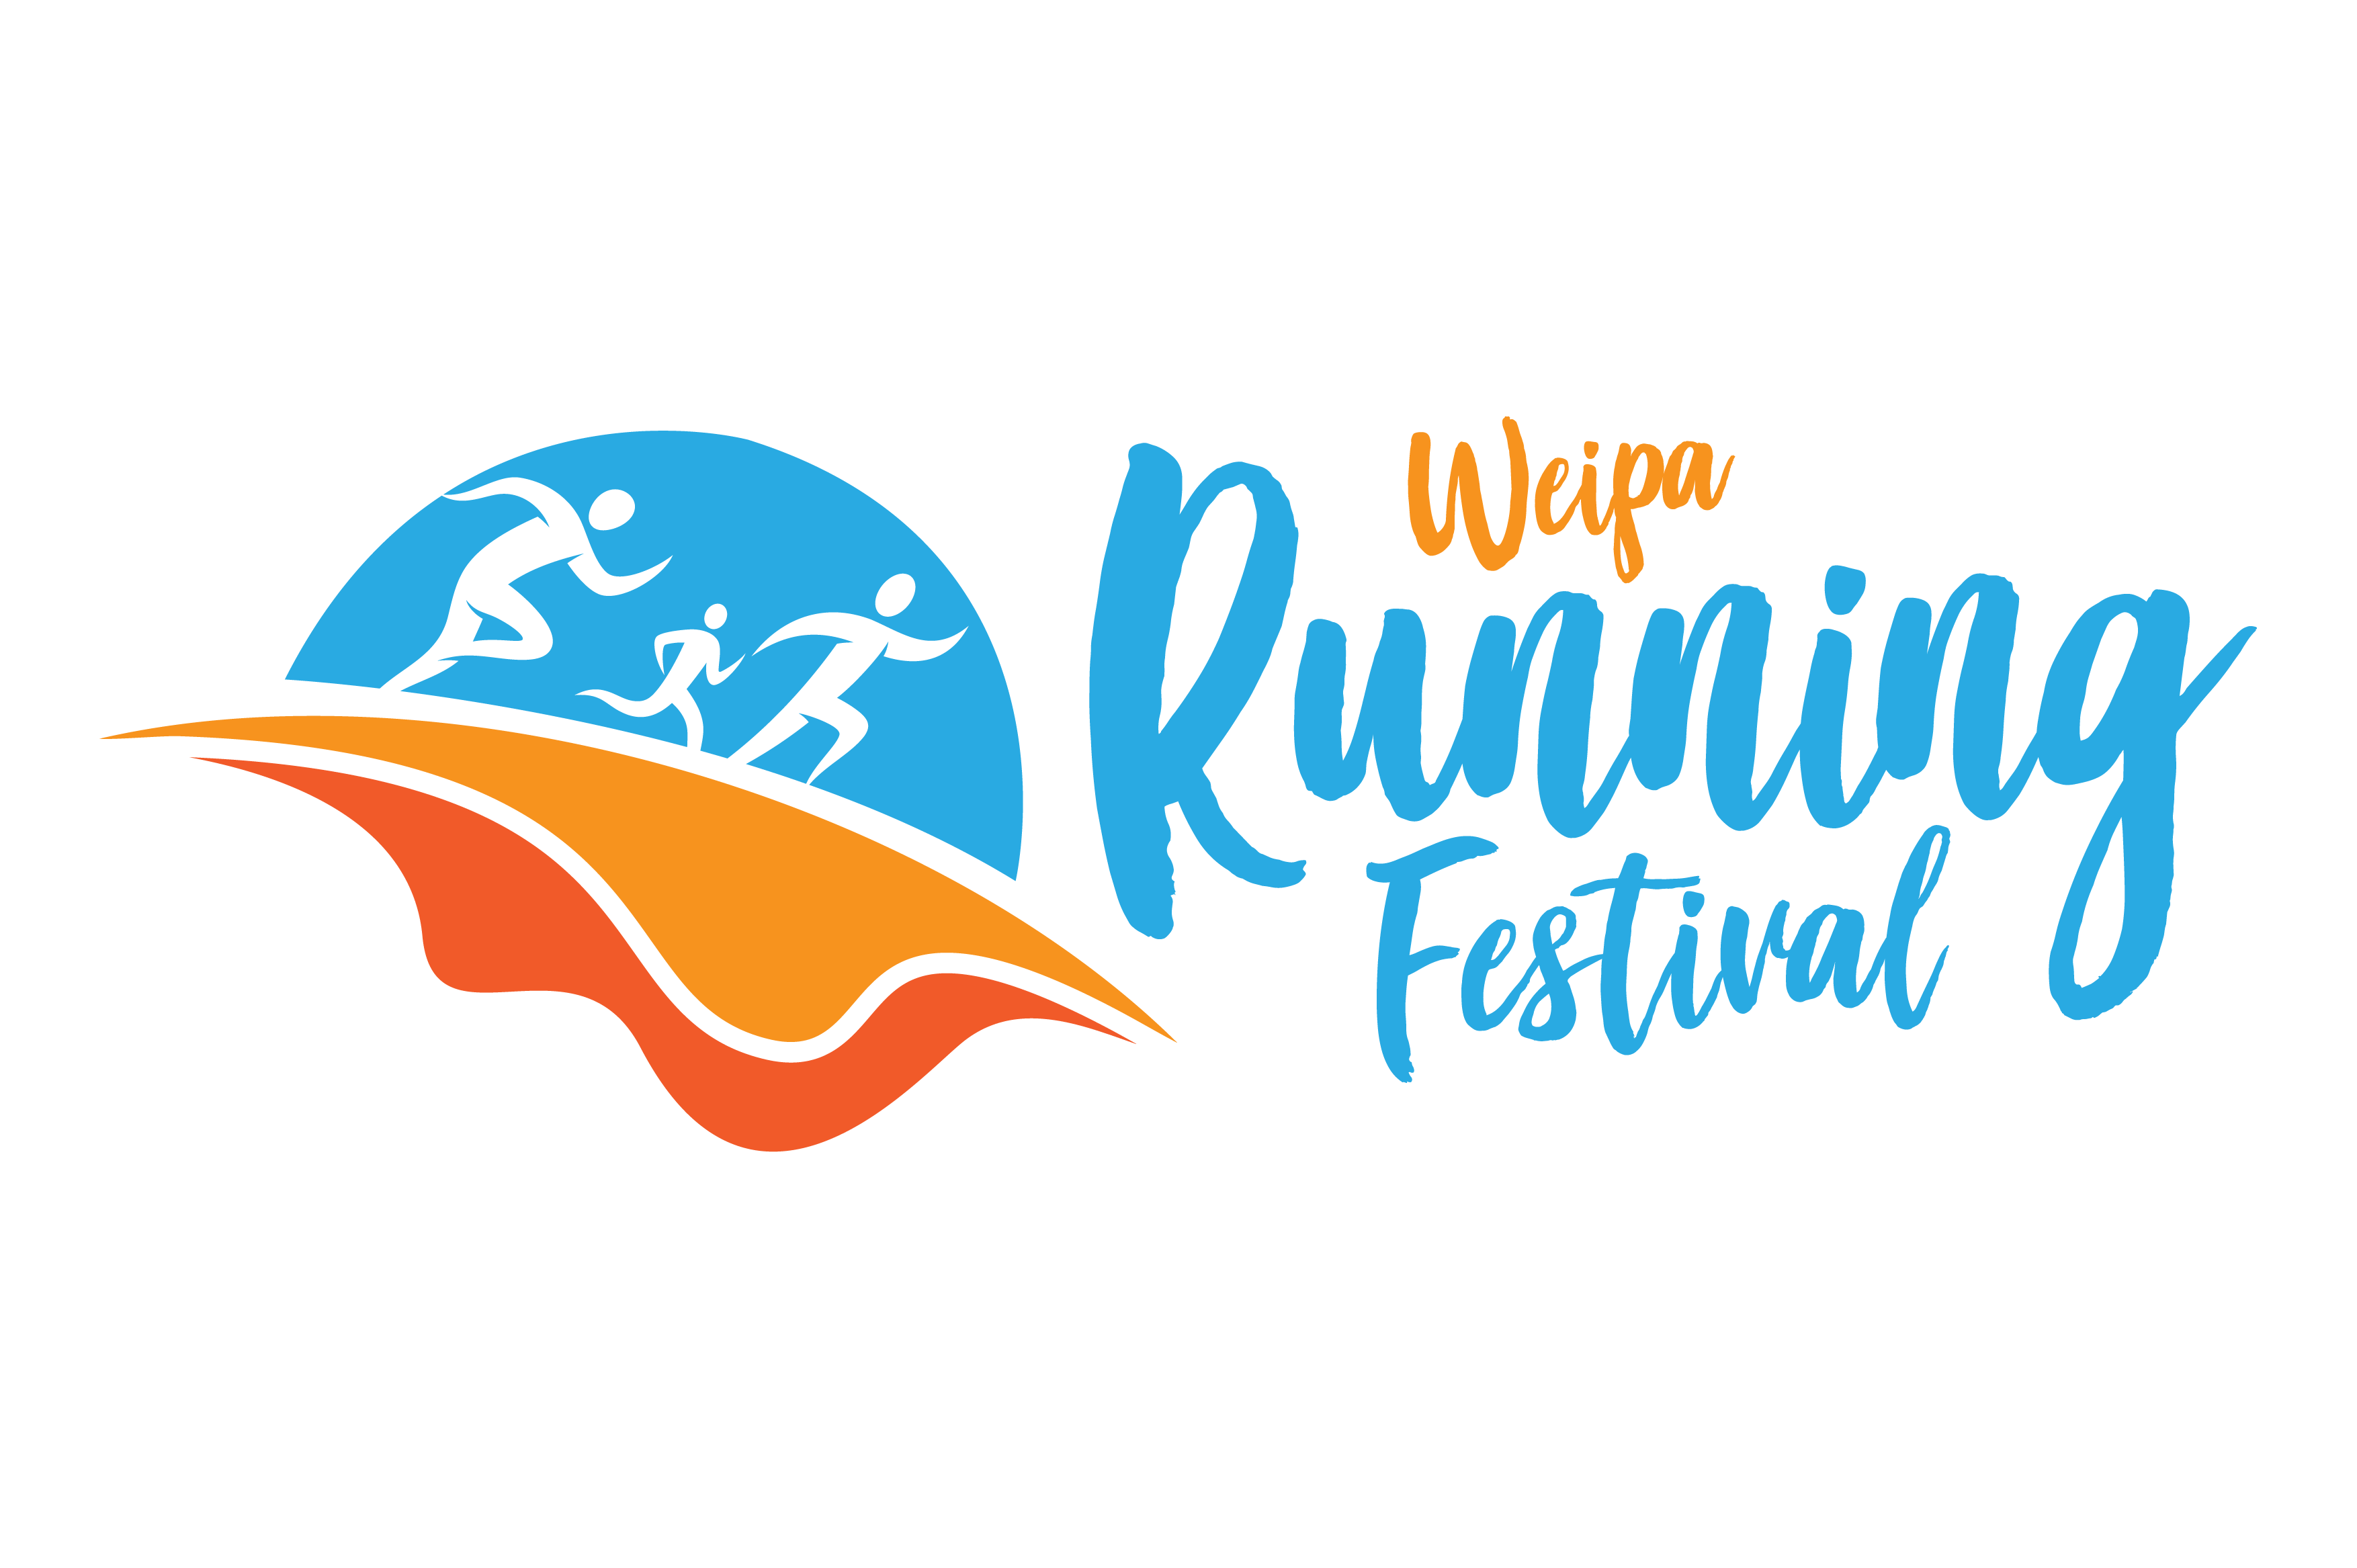 Weipa Running Festival 